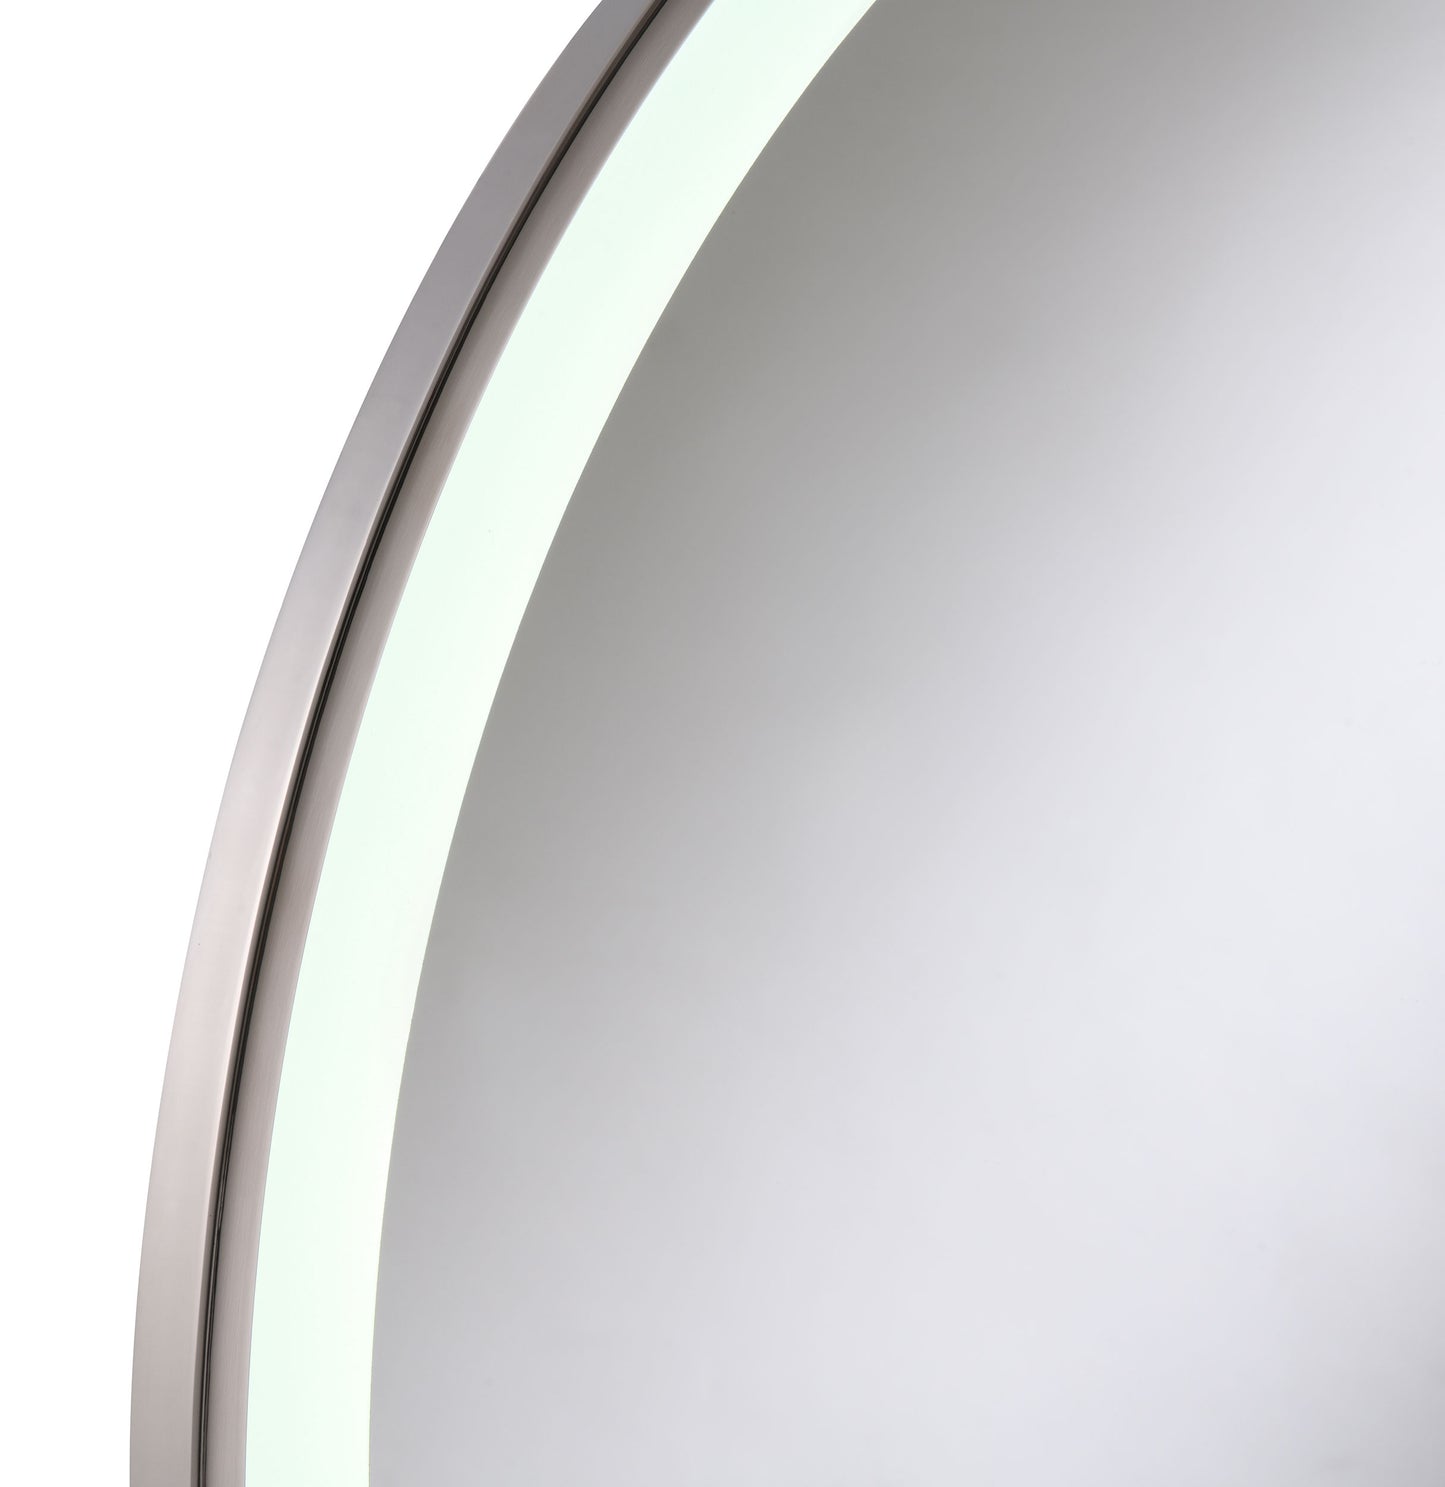 Jocelyn Round Table Top LED Vanity Mirror White Marble Base Chrome Frame